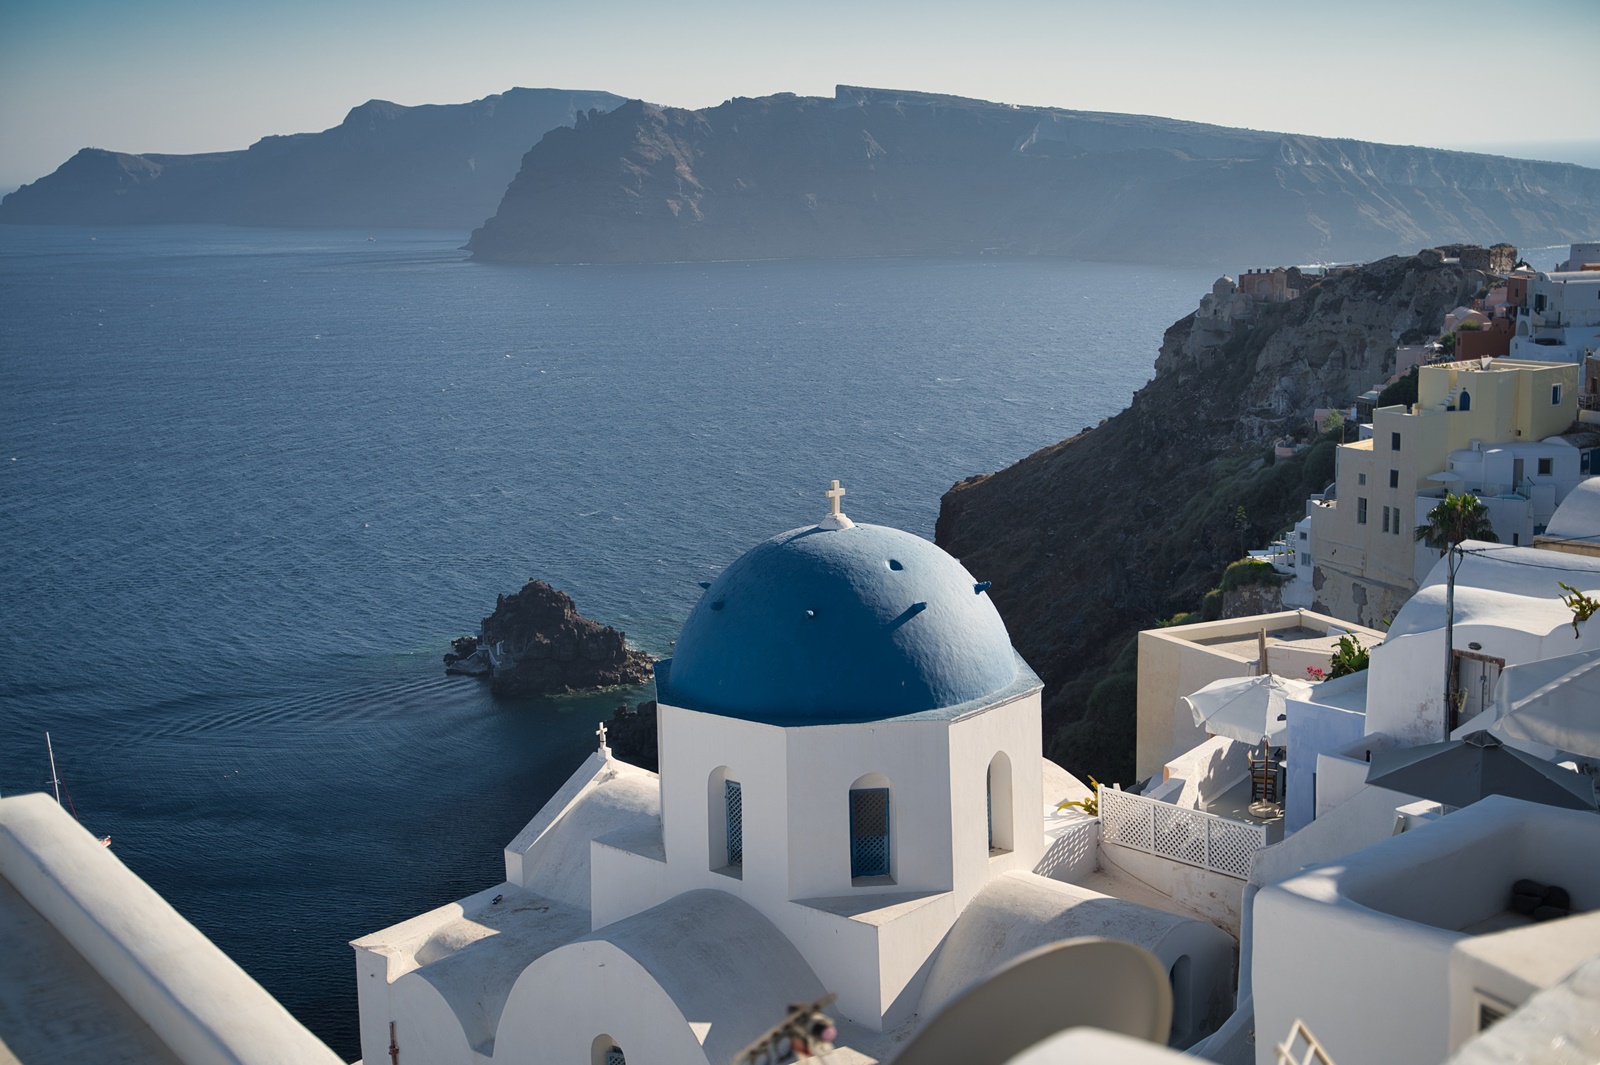 “Μυστικοί” προορισμοί στην Ελλάδα: Τα νησιά που προτείνει η Daily Telegraph